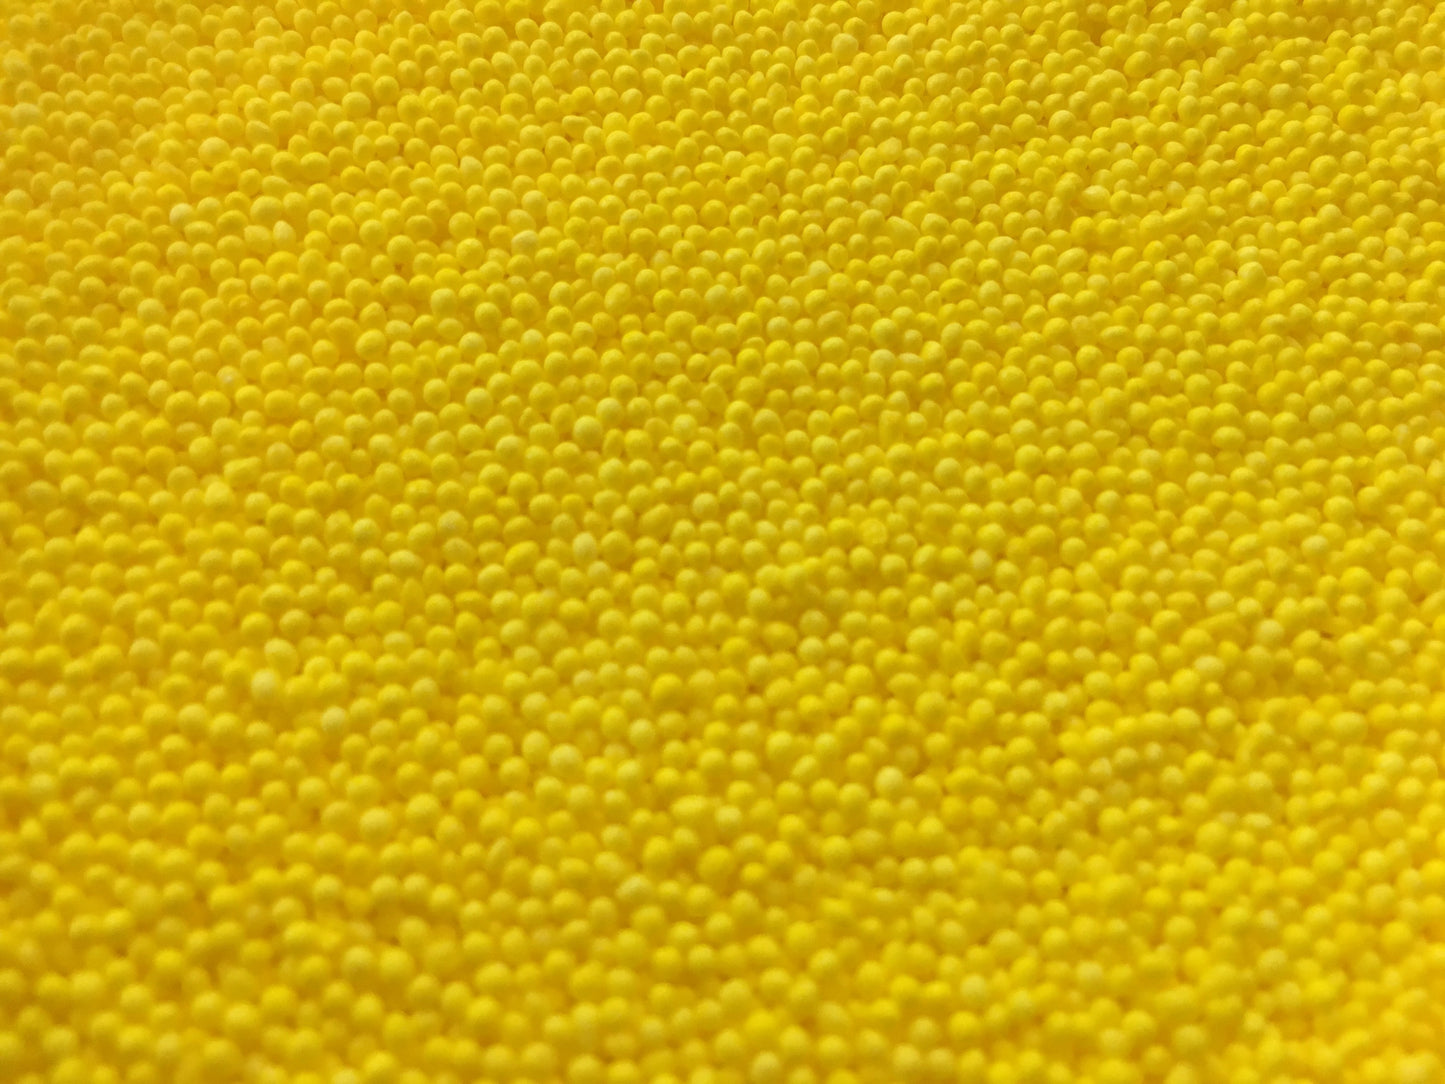 Yellow Nonpareils